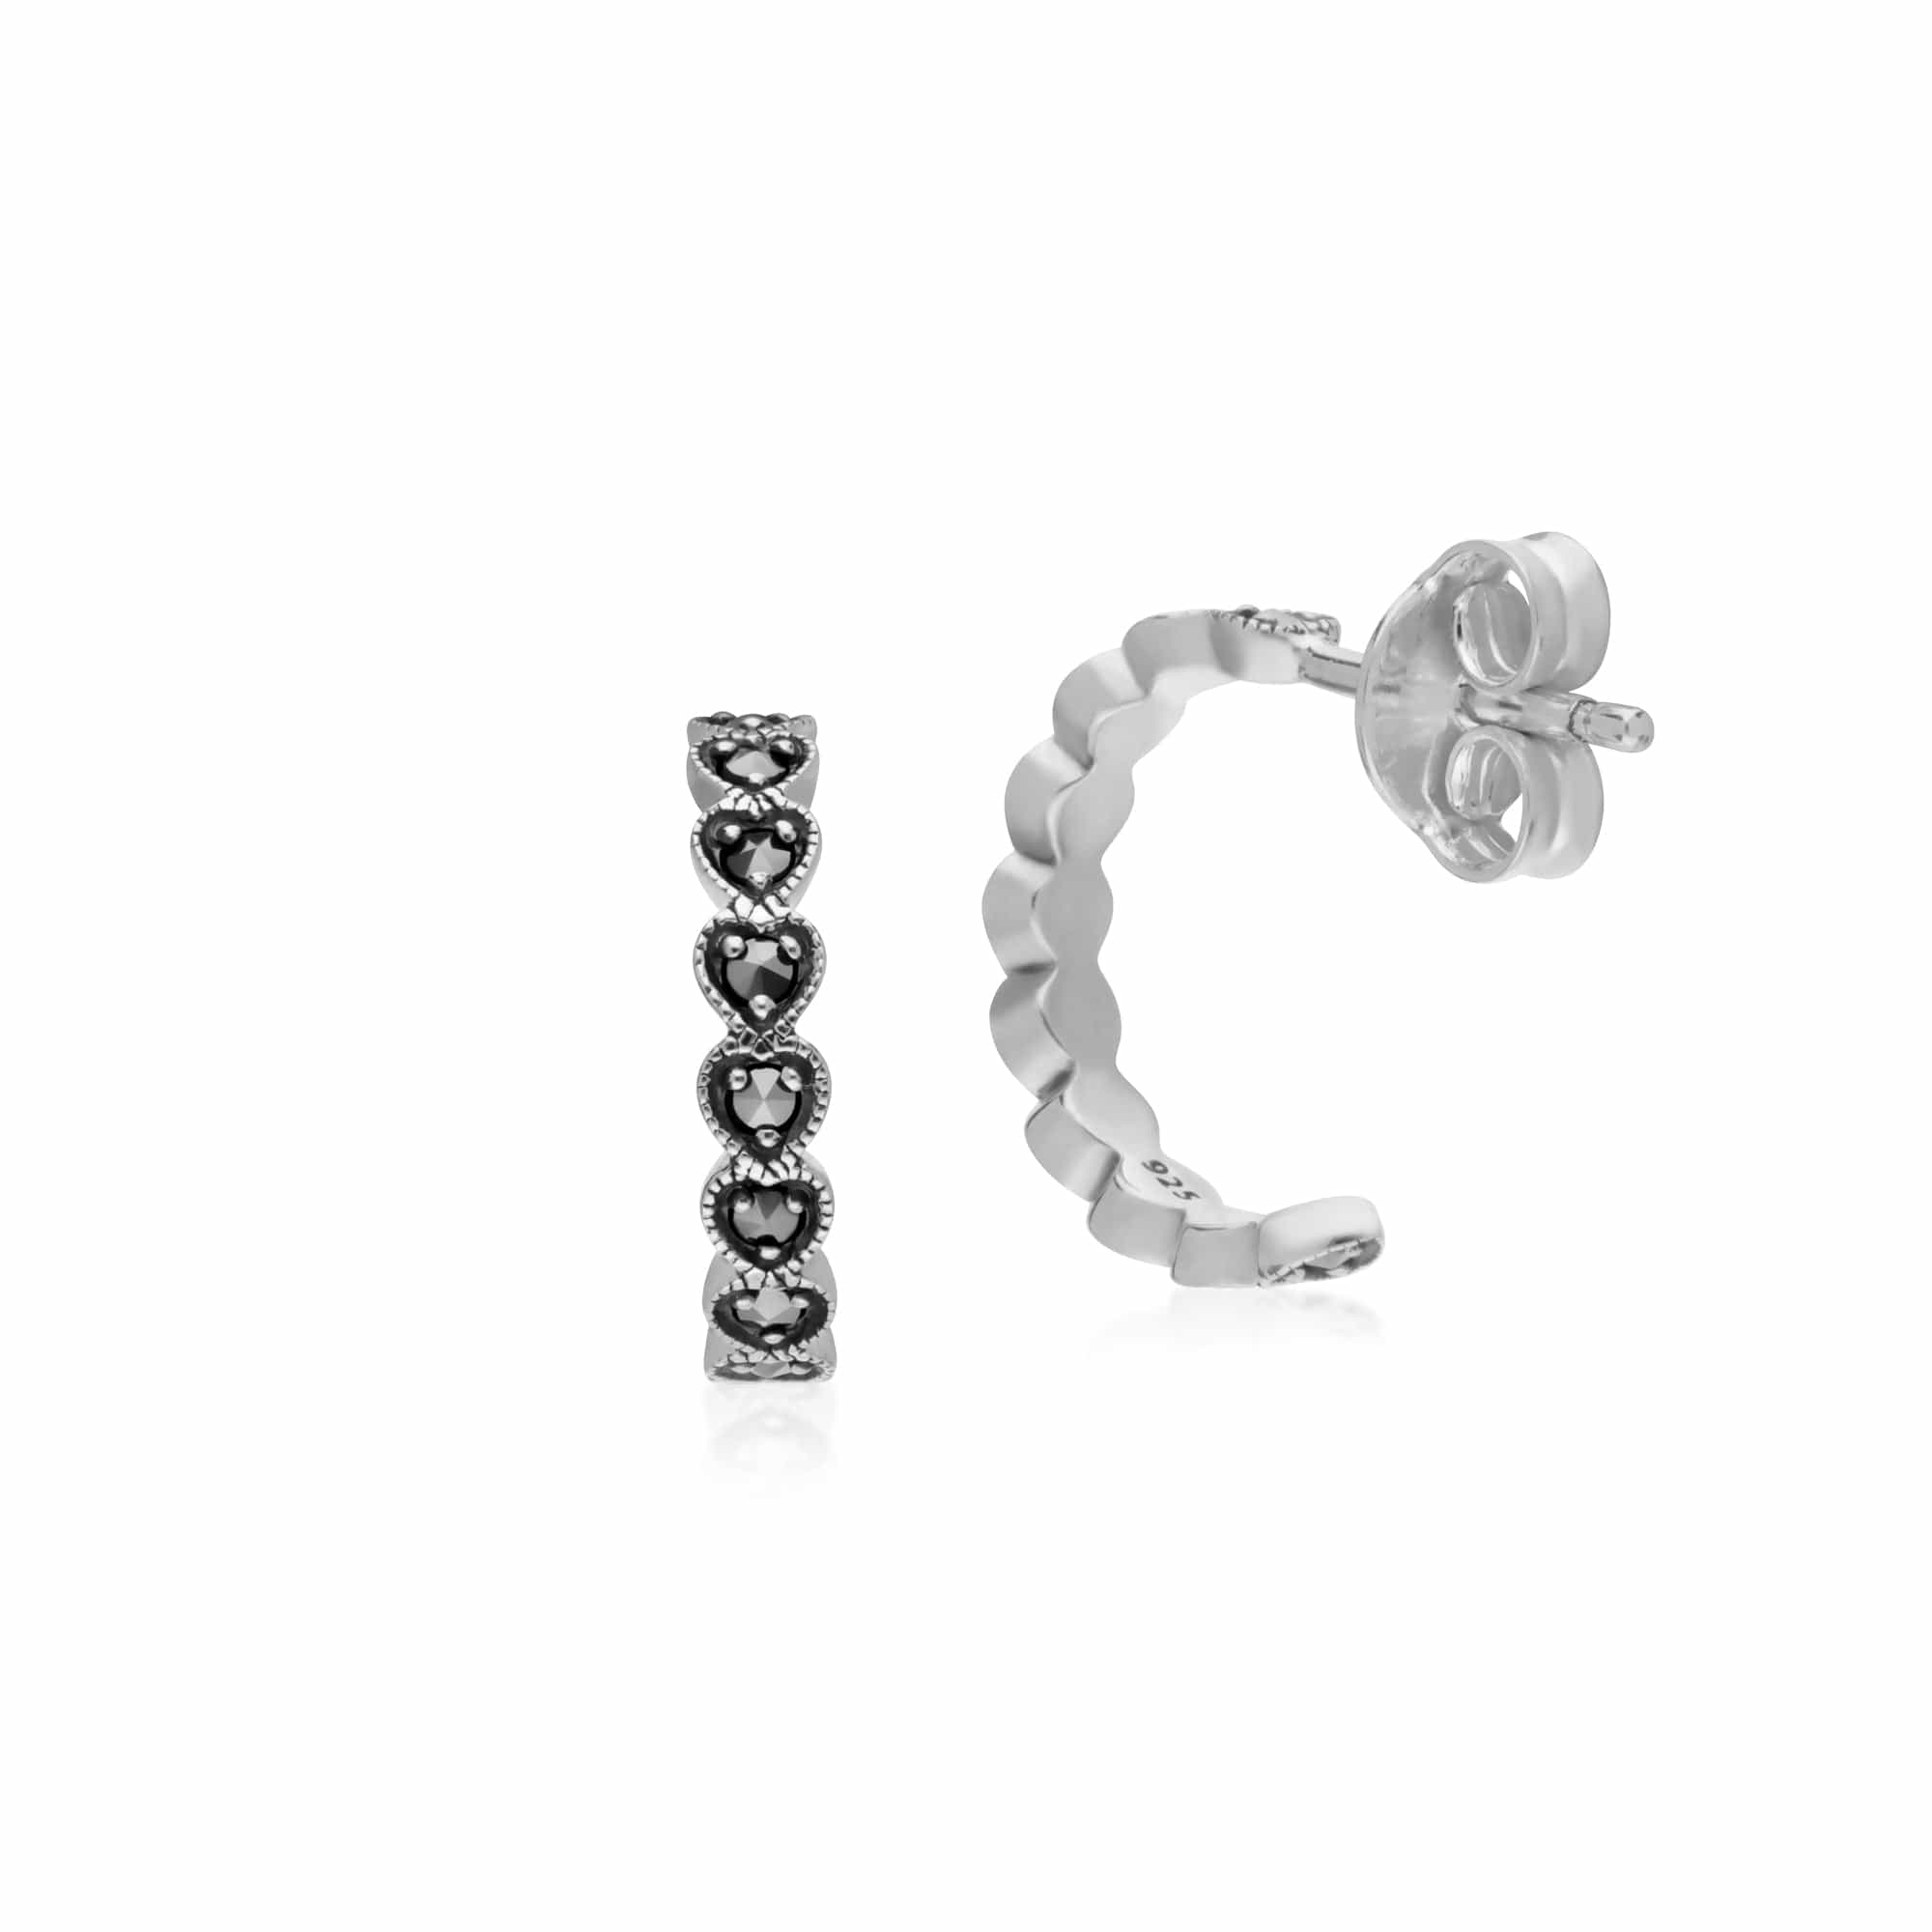 214E873401925 Geometric Heart Marcasite Half Hoop Earrings in 925 Sterling Silver 2